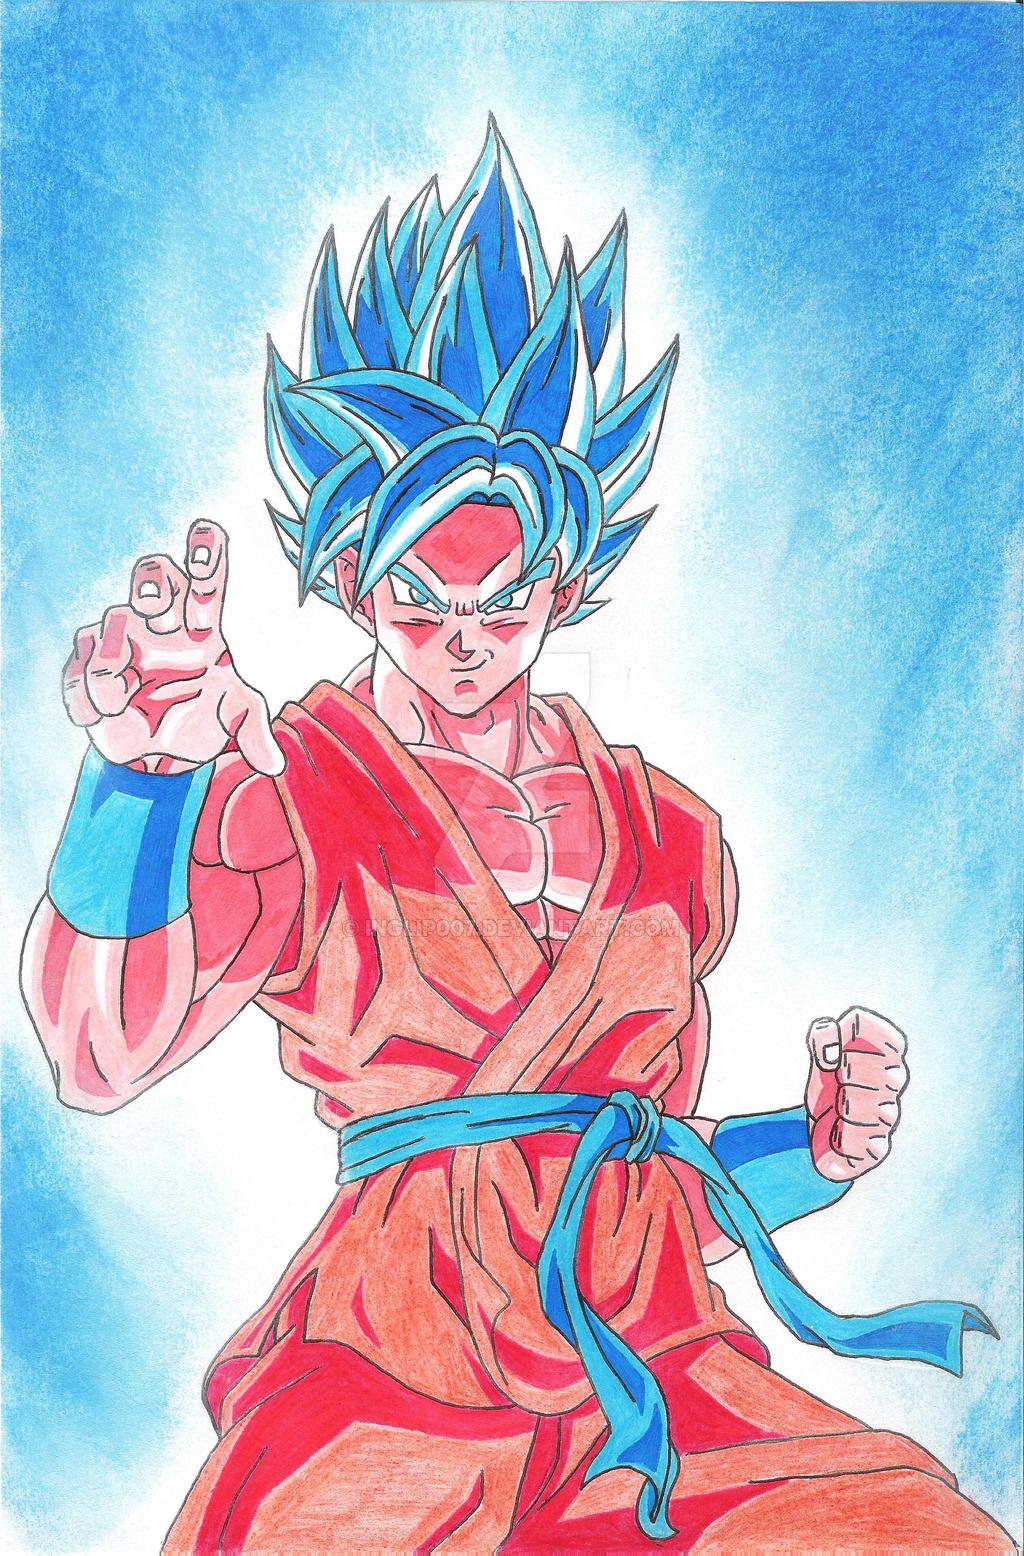 Goku {Super Saiyan Beyond God}